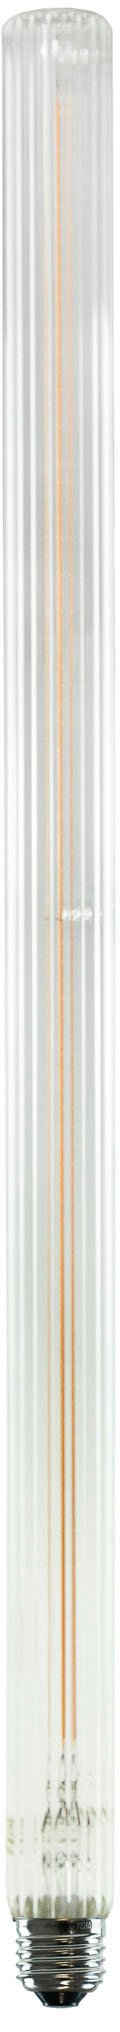 SEGULA LED-Leuchtmittel LED Long Tube 500 klar geriffelt, E27, 1 St., Warmweiß, LED Long Tube 500 klar geriffelt, E27, 6,2W, CRI 90, dimmbar